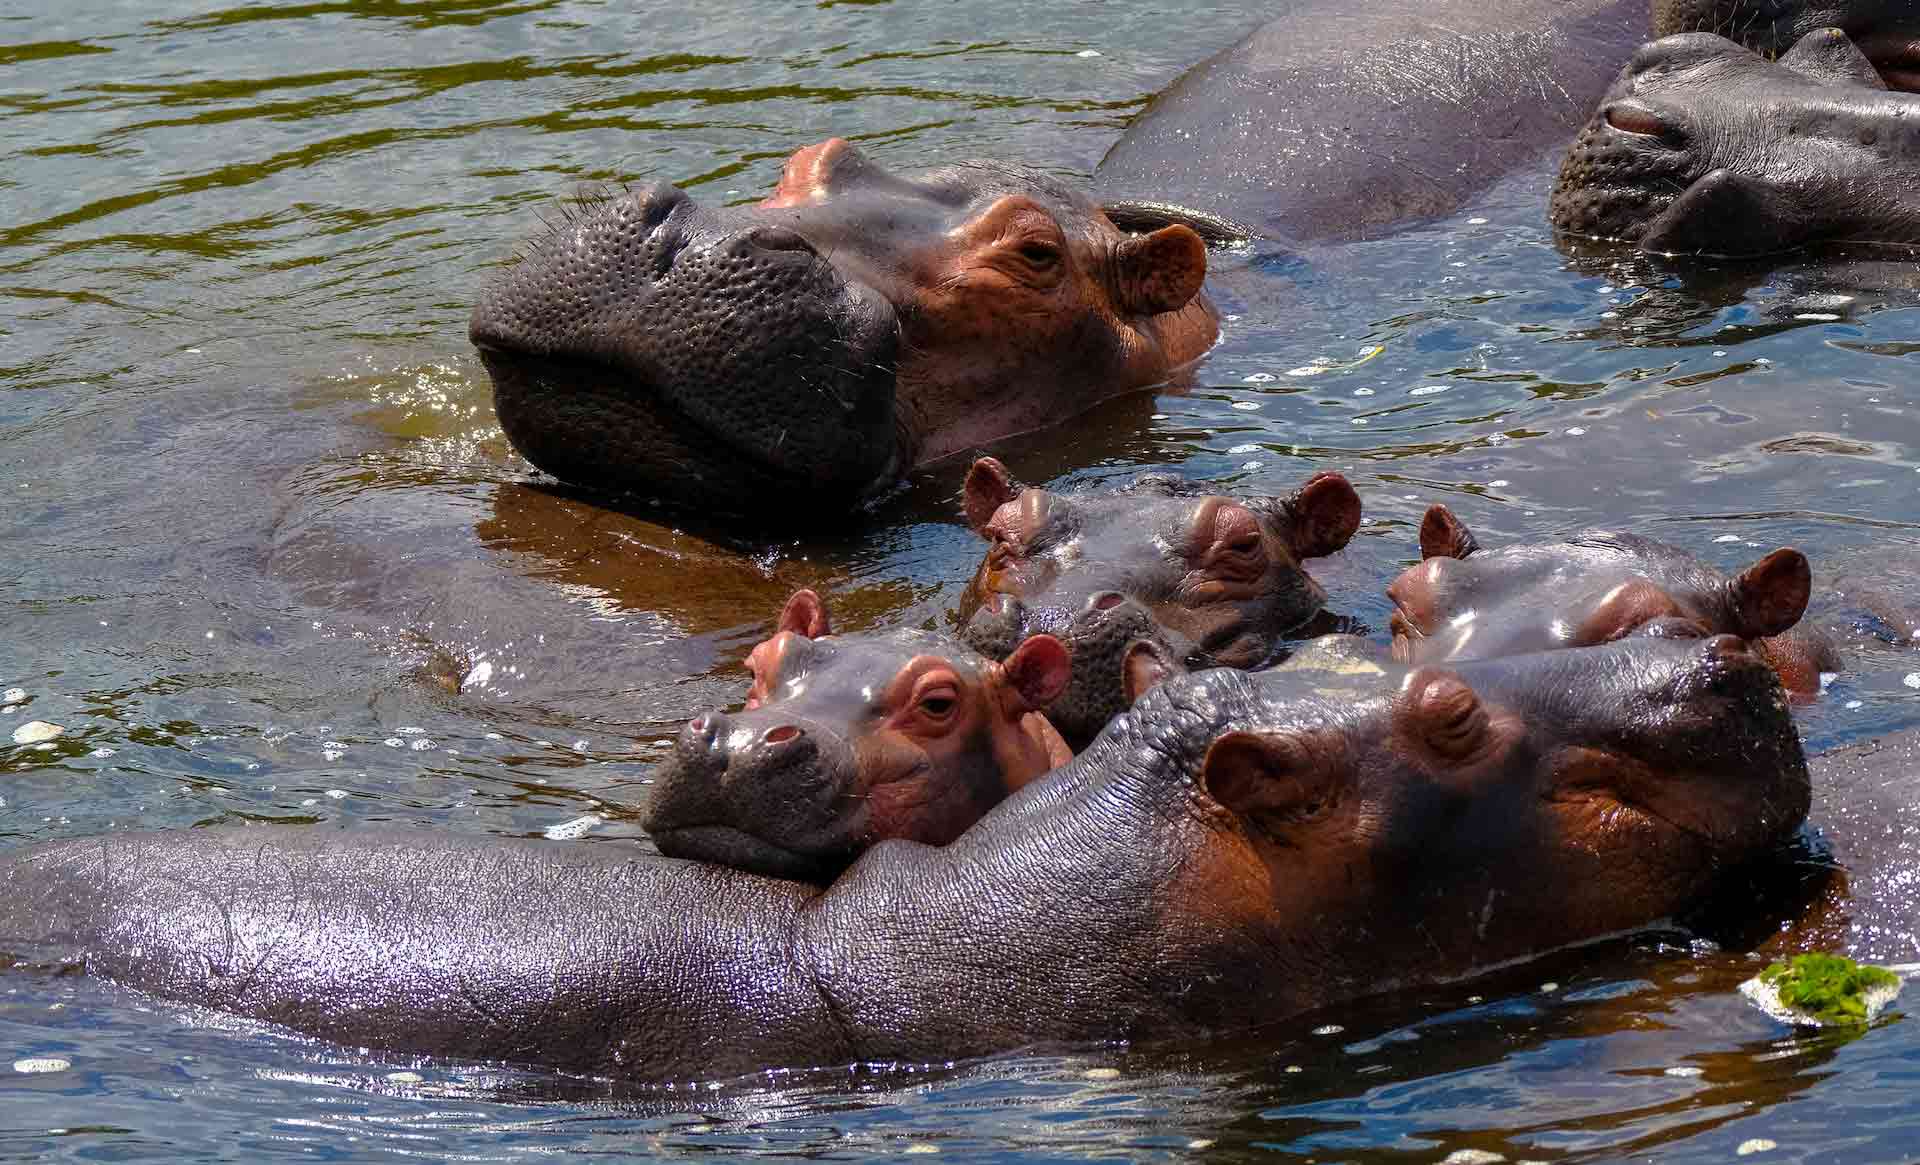 Hippos enjoying the water, Uganda